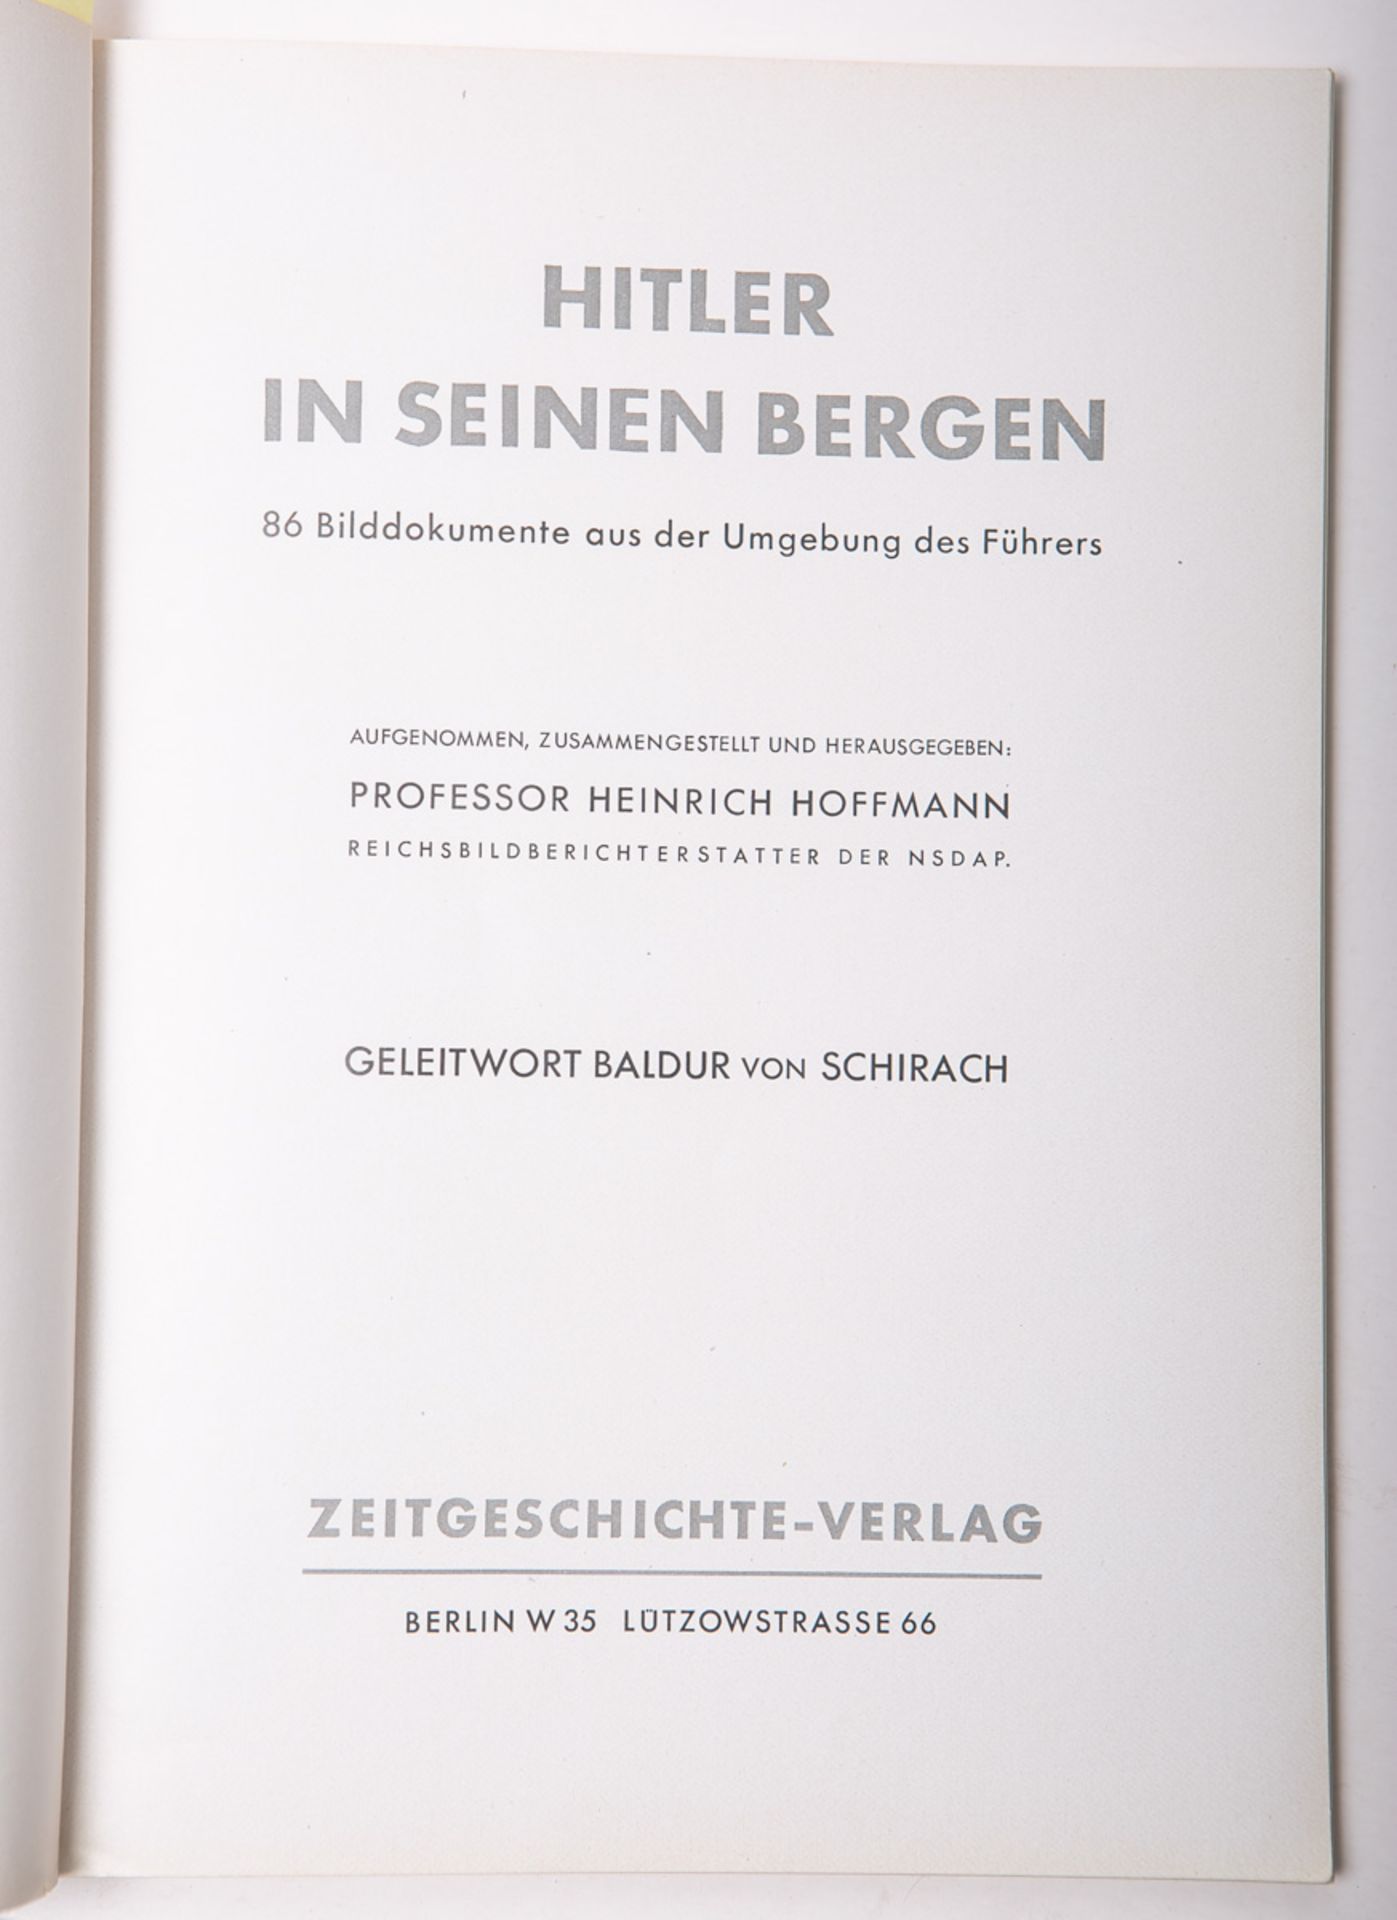 Hoffmann, Heinrich (Hrsg.), "Hitler in seinen Bergen" - Bild 2 aus 2